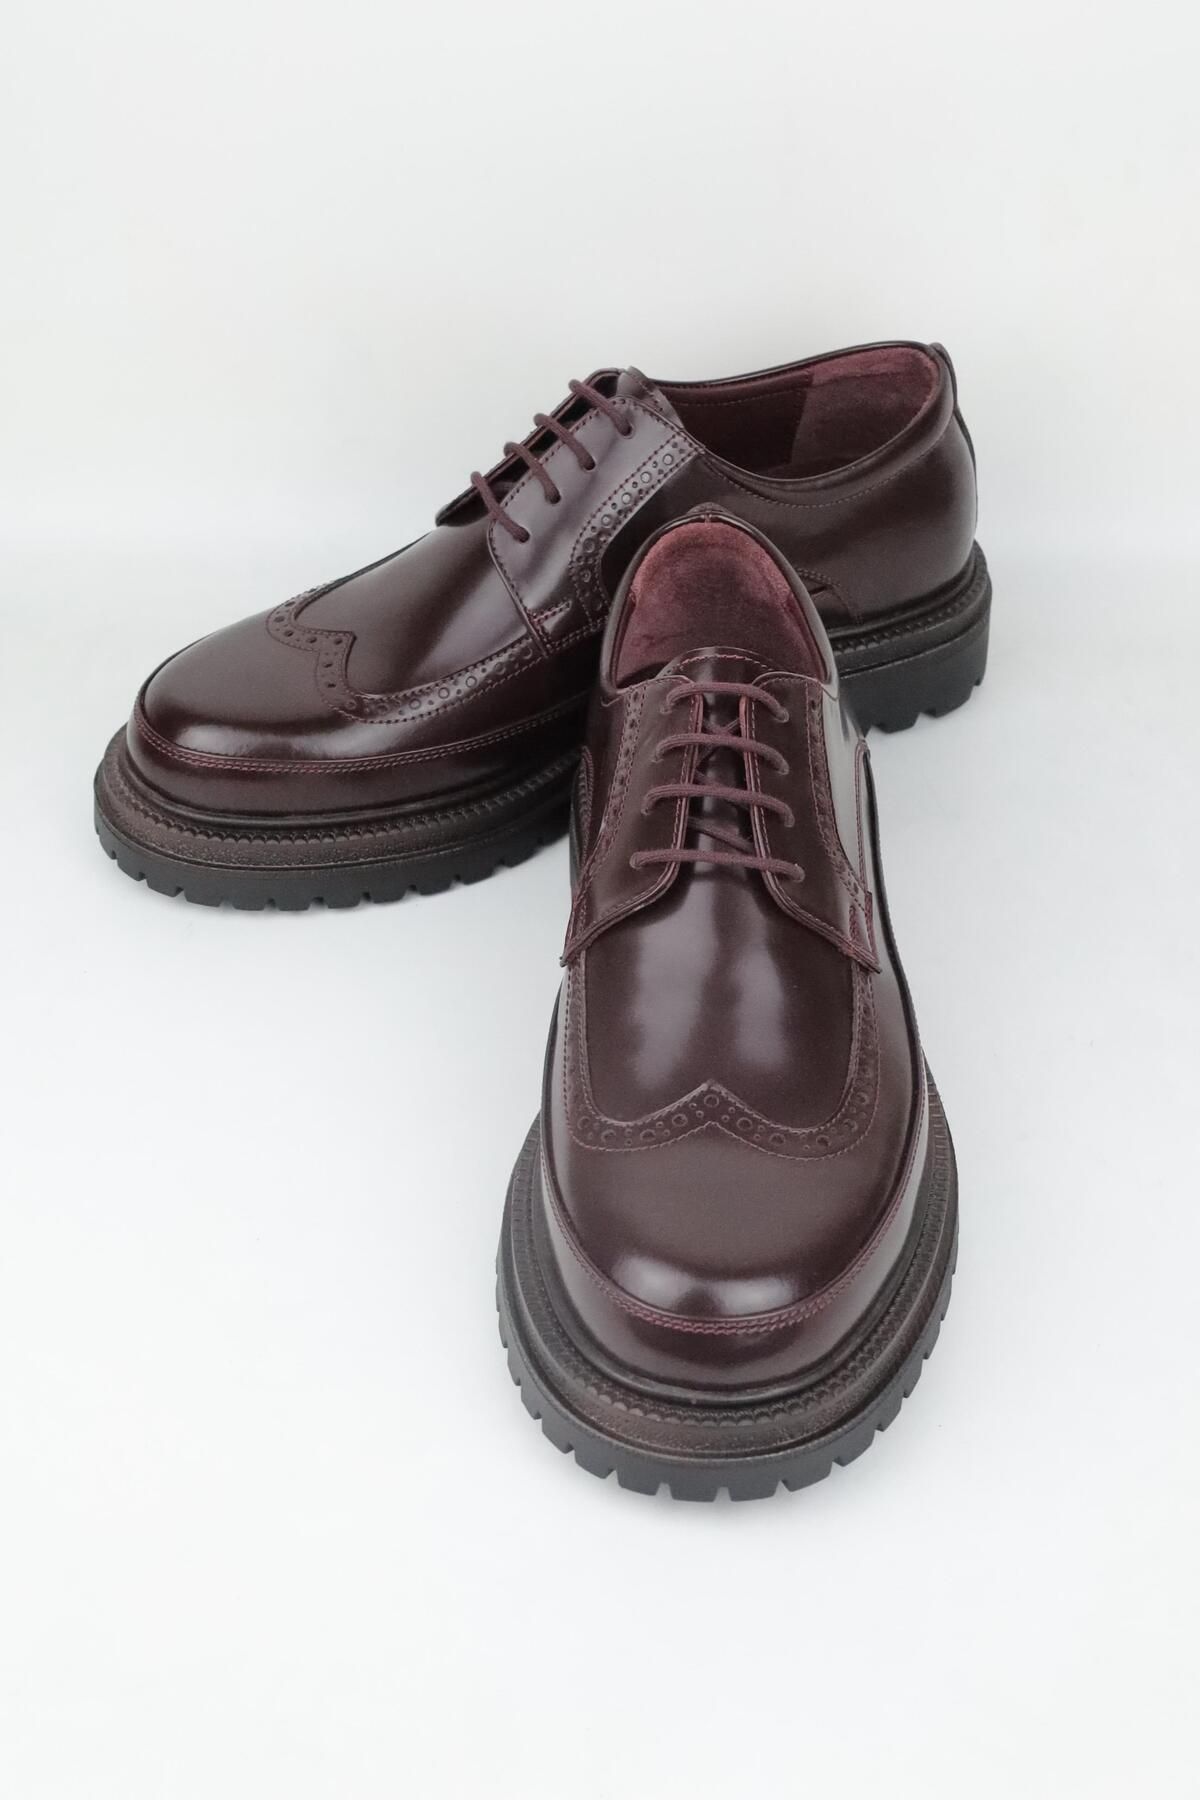 HARRY MANSON Model 089 Hakiki Açma Deri Erkek Günlük Ayakkabı